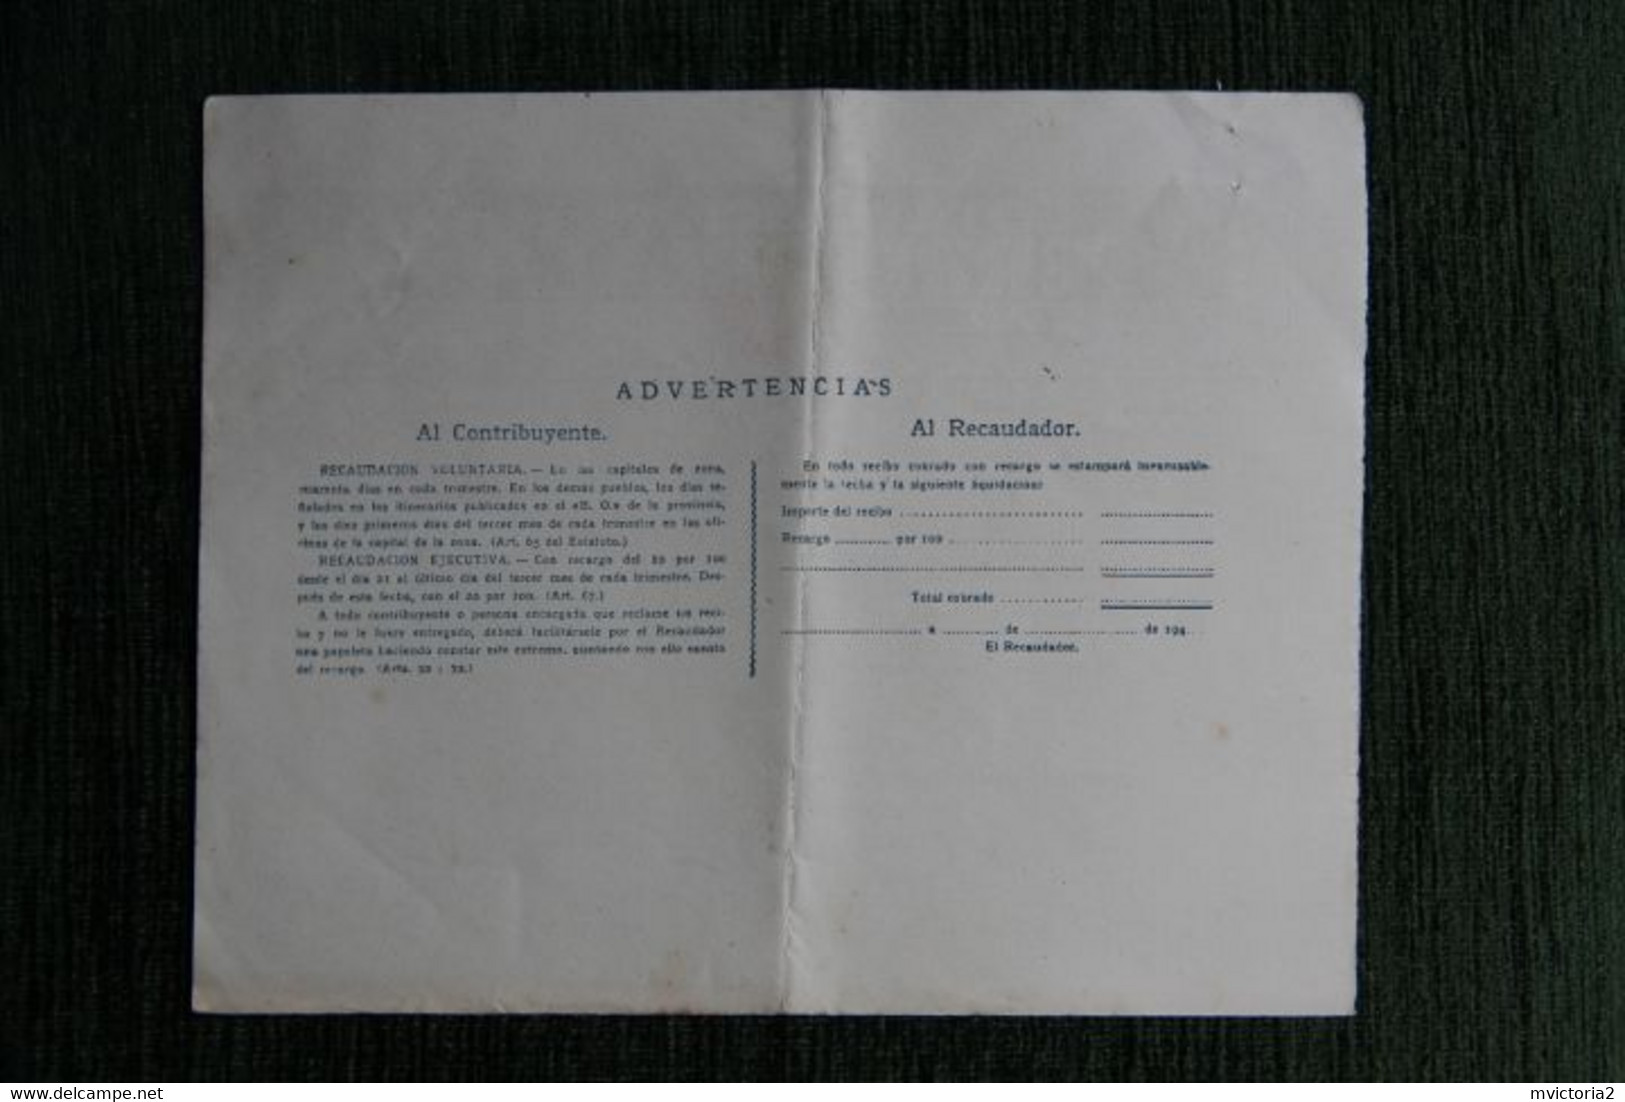 ESPAGNE : Contribucion Territorial 1949 - Spain